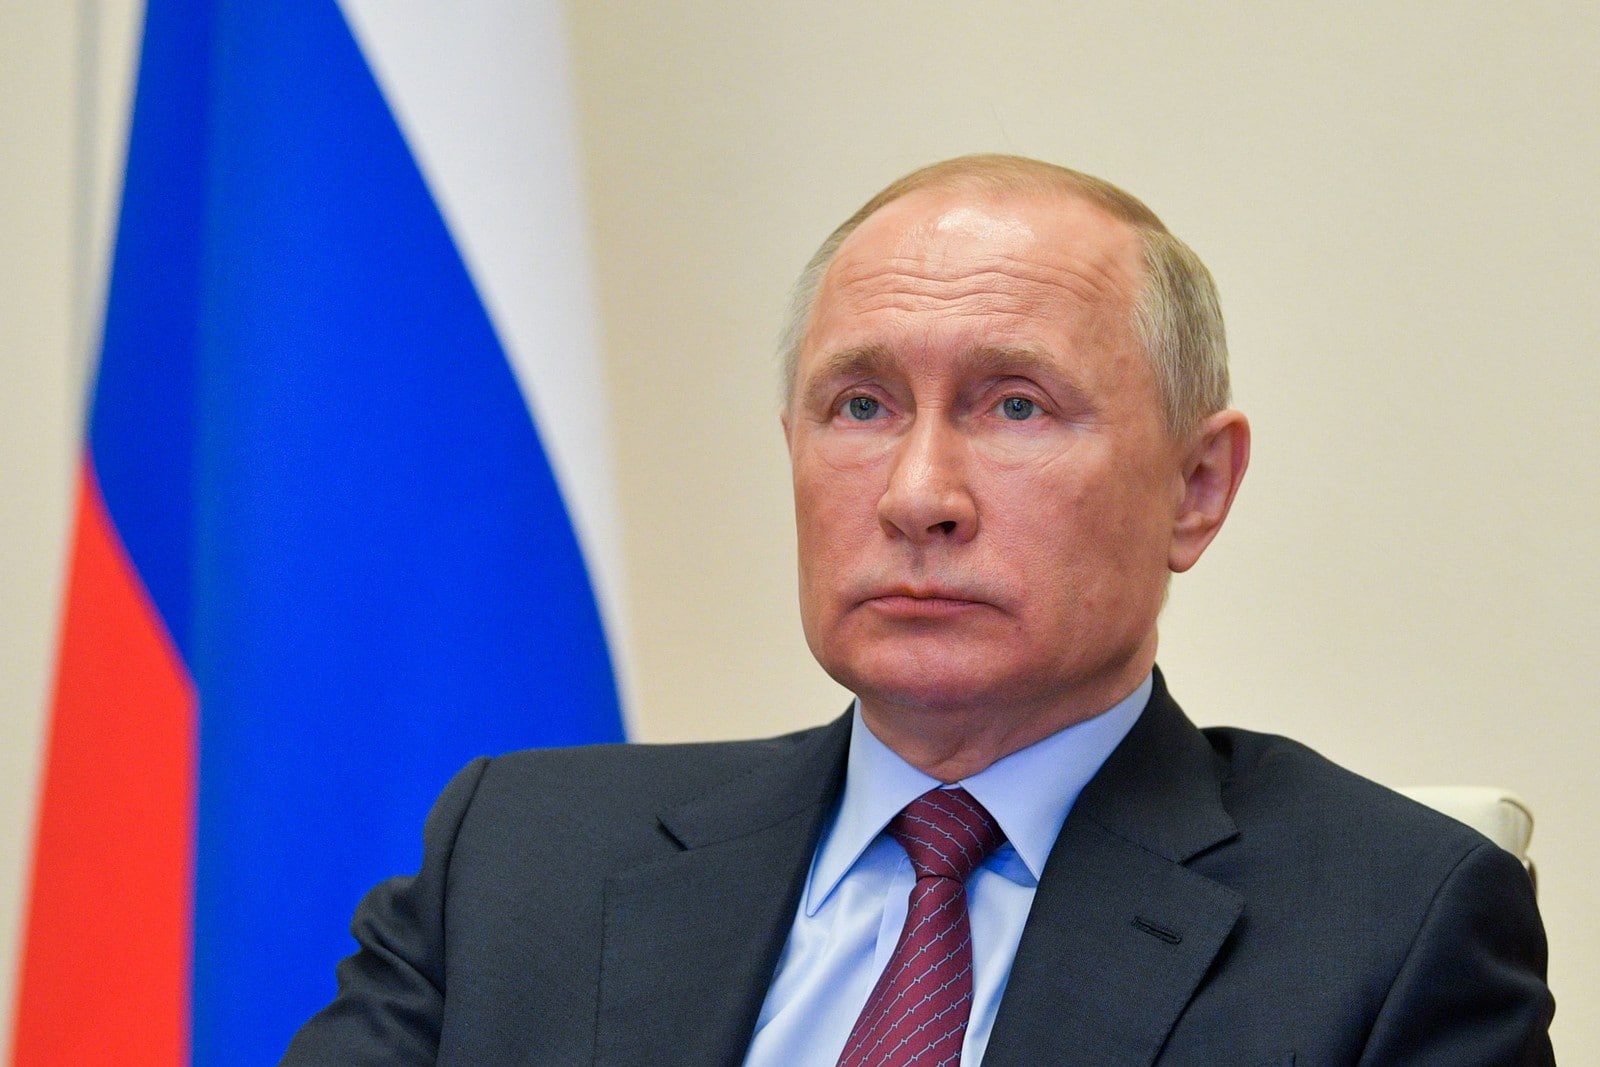 La réforme constitutionnelle permet à Vladimir Poutine de prolonger son pouvoir